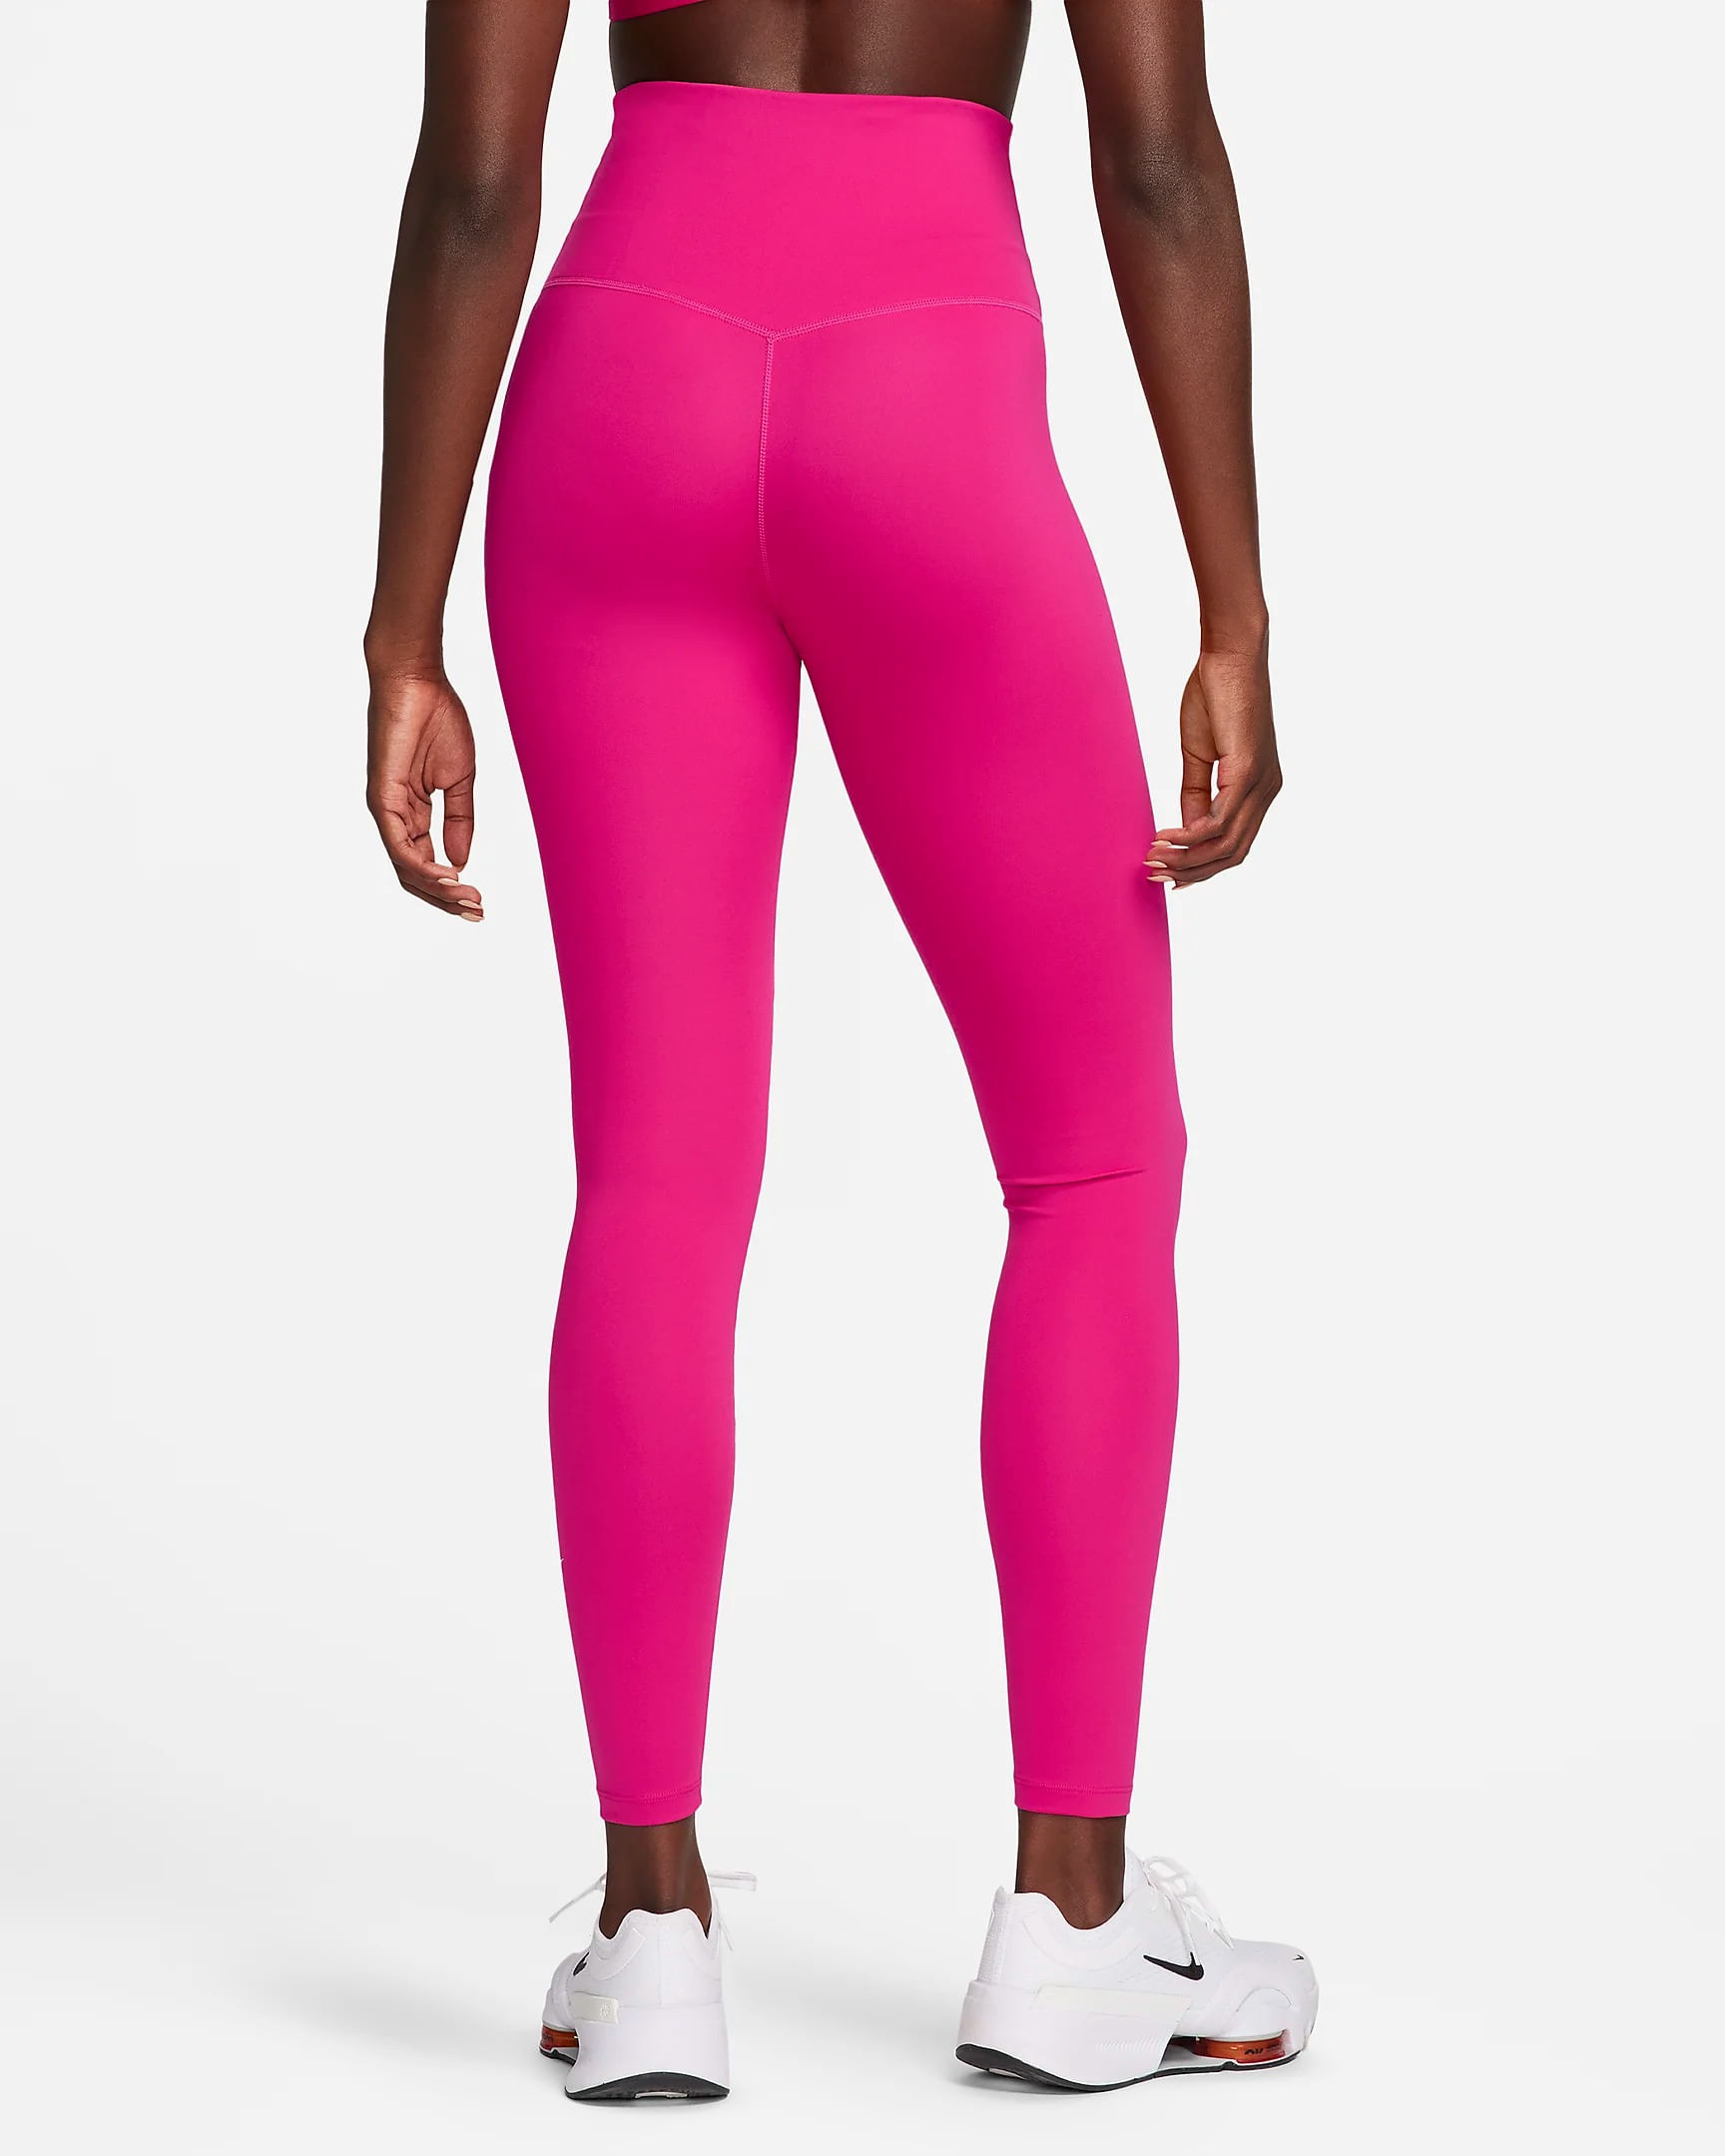 Calça Feminina Legging Genérica - Nike - Rosa - Shop2gether